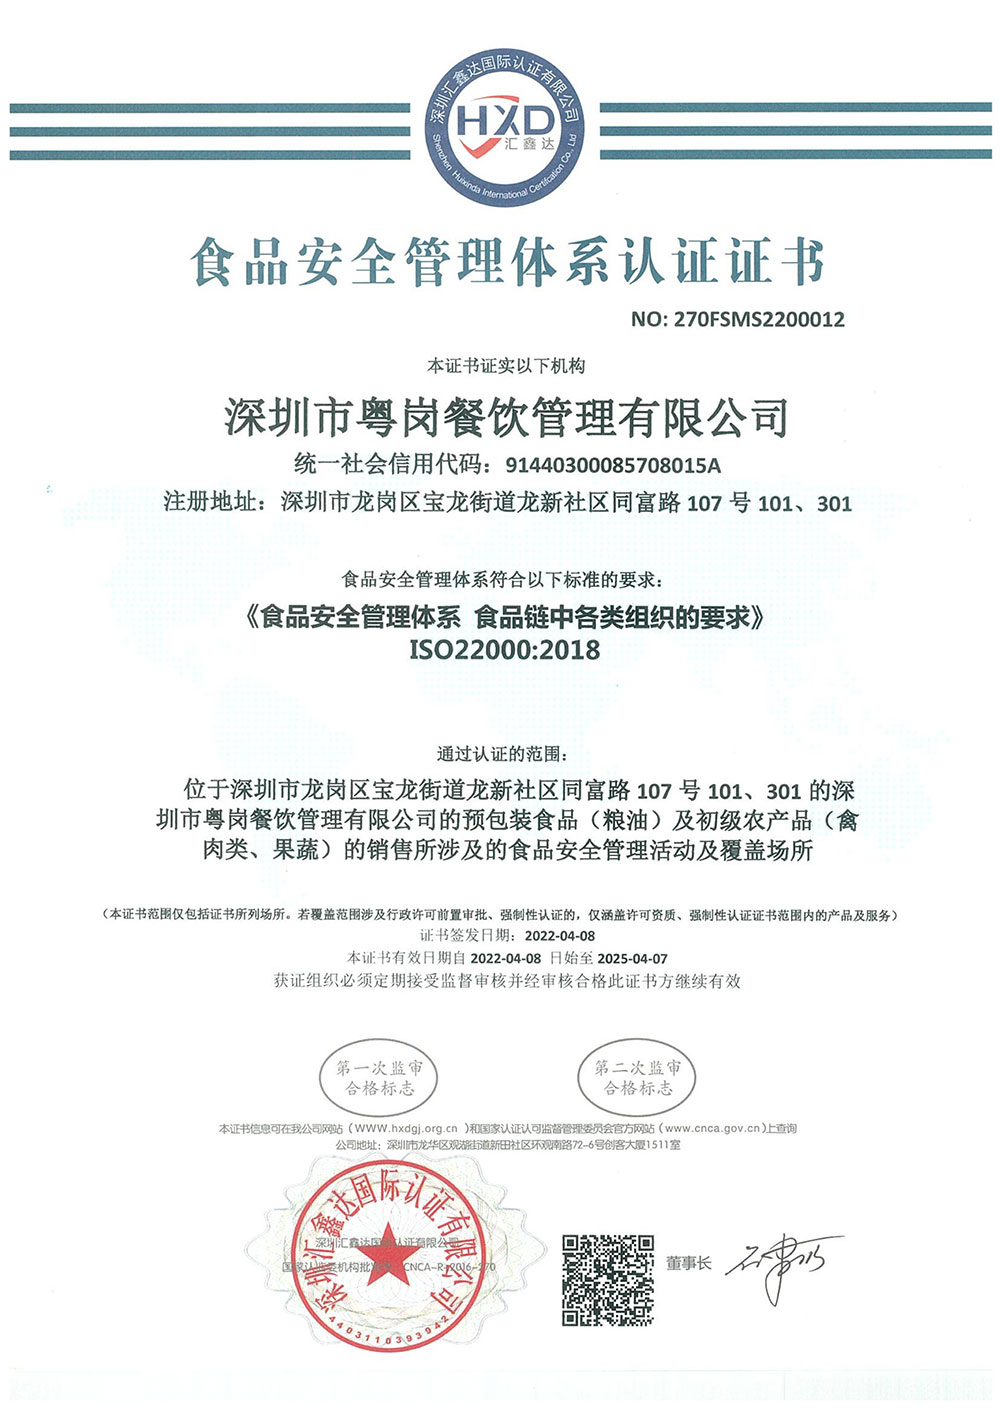 食品安全管理体系认证证书品牌荣誉粤岗蔬菜配送